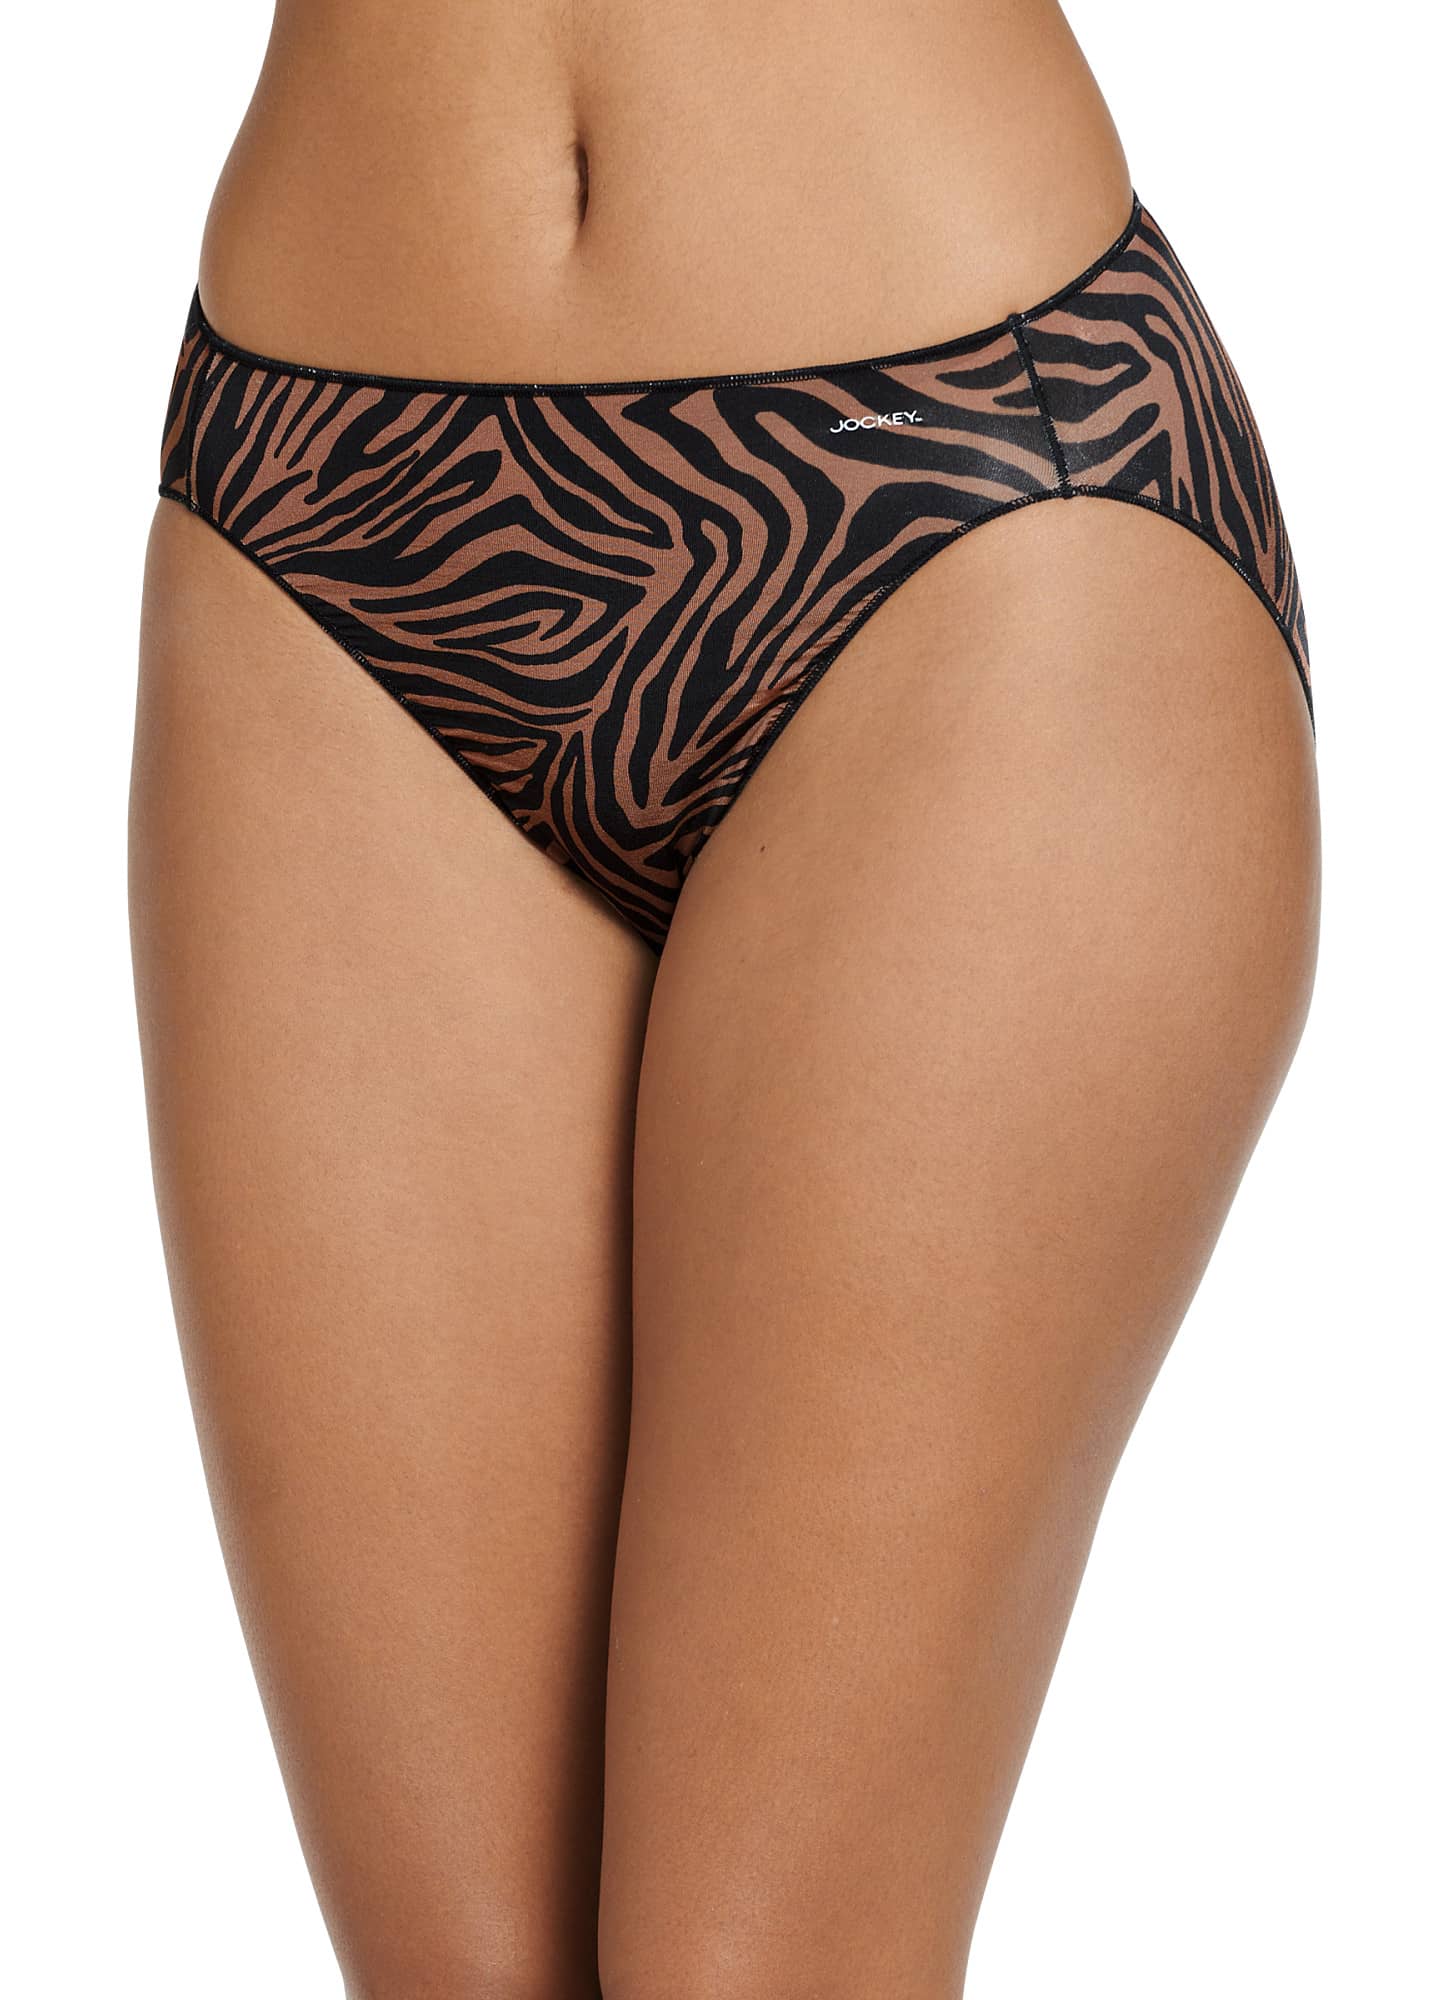 Jockey Leopard Panties for Women